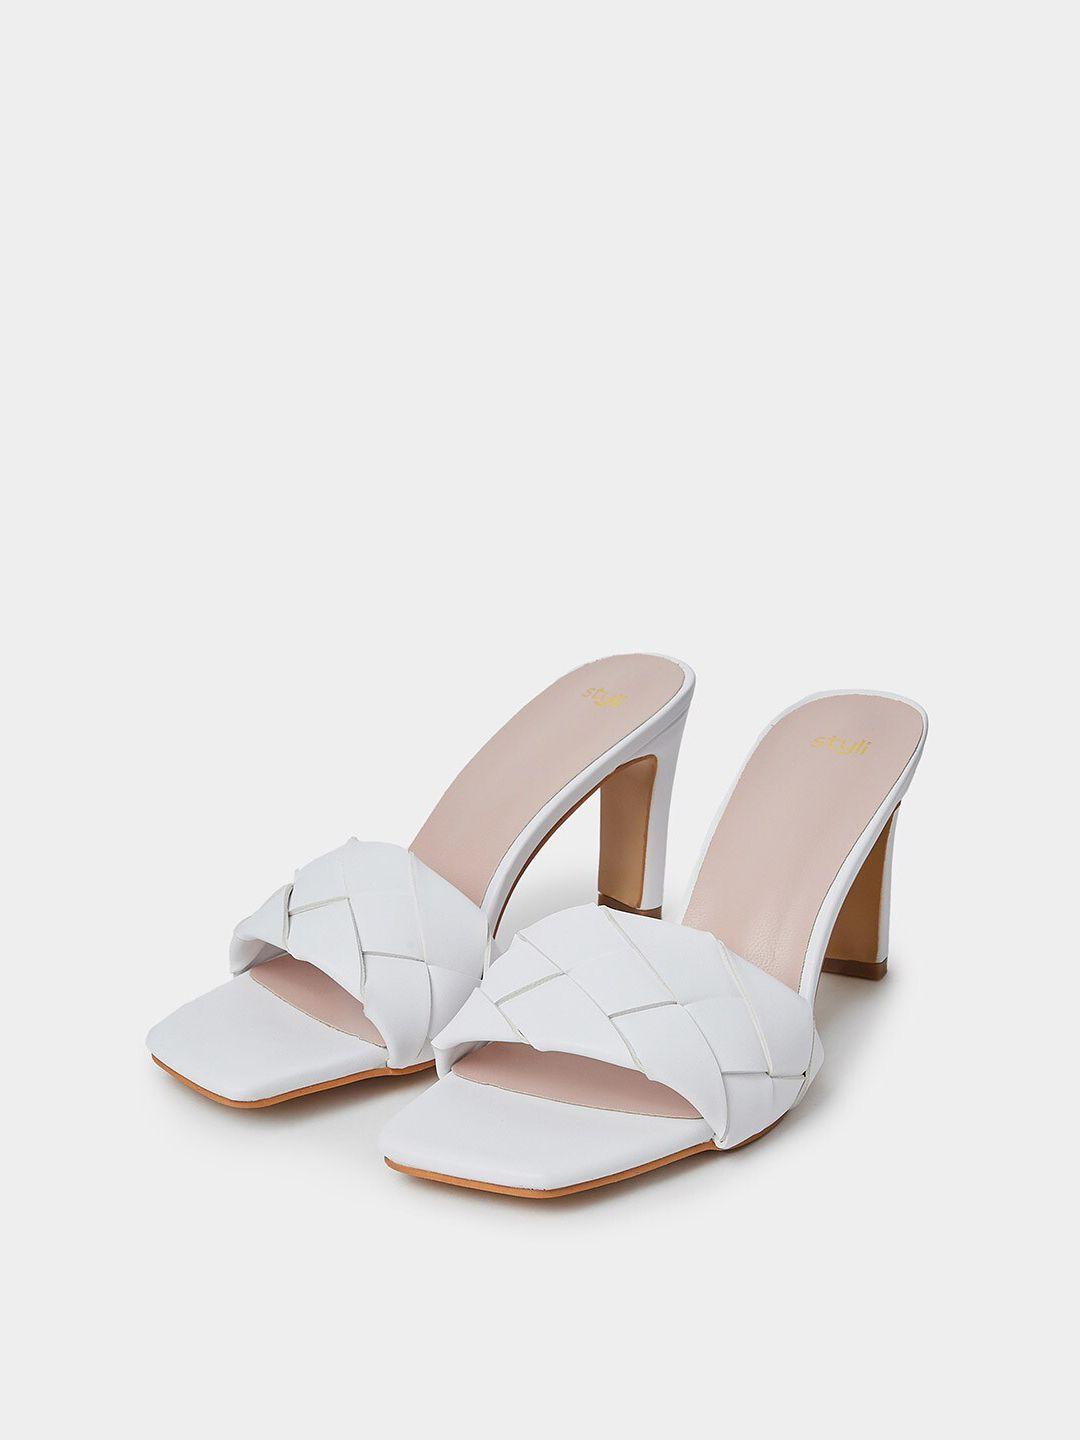 styli-open-toe-woven-design-slim-heels